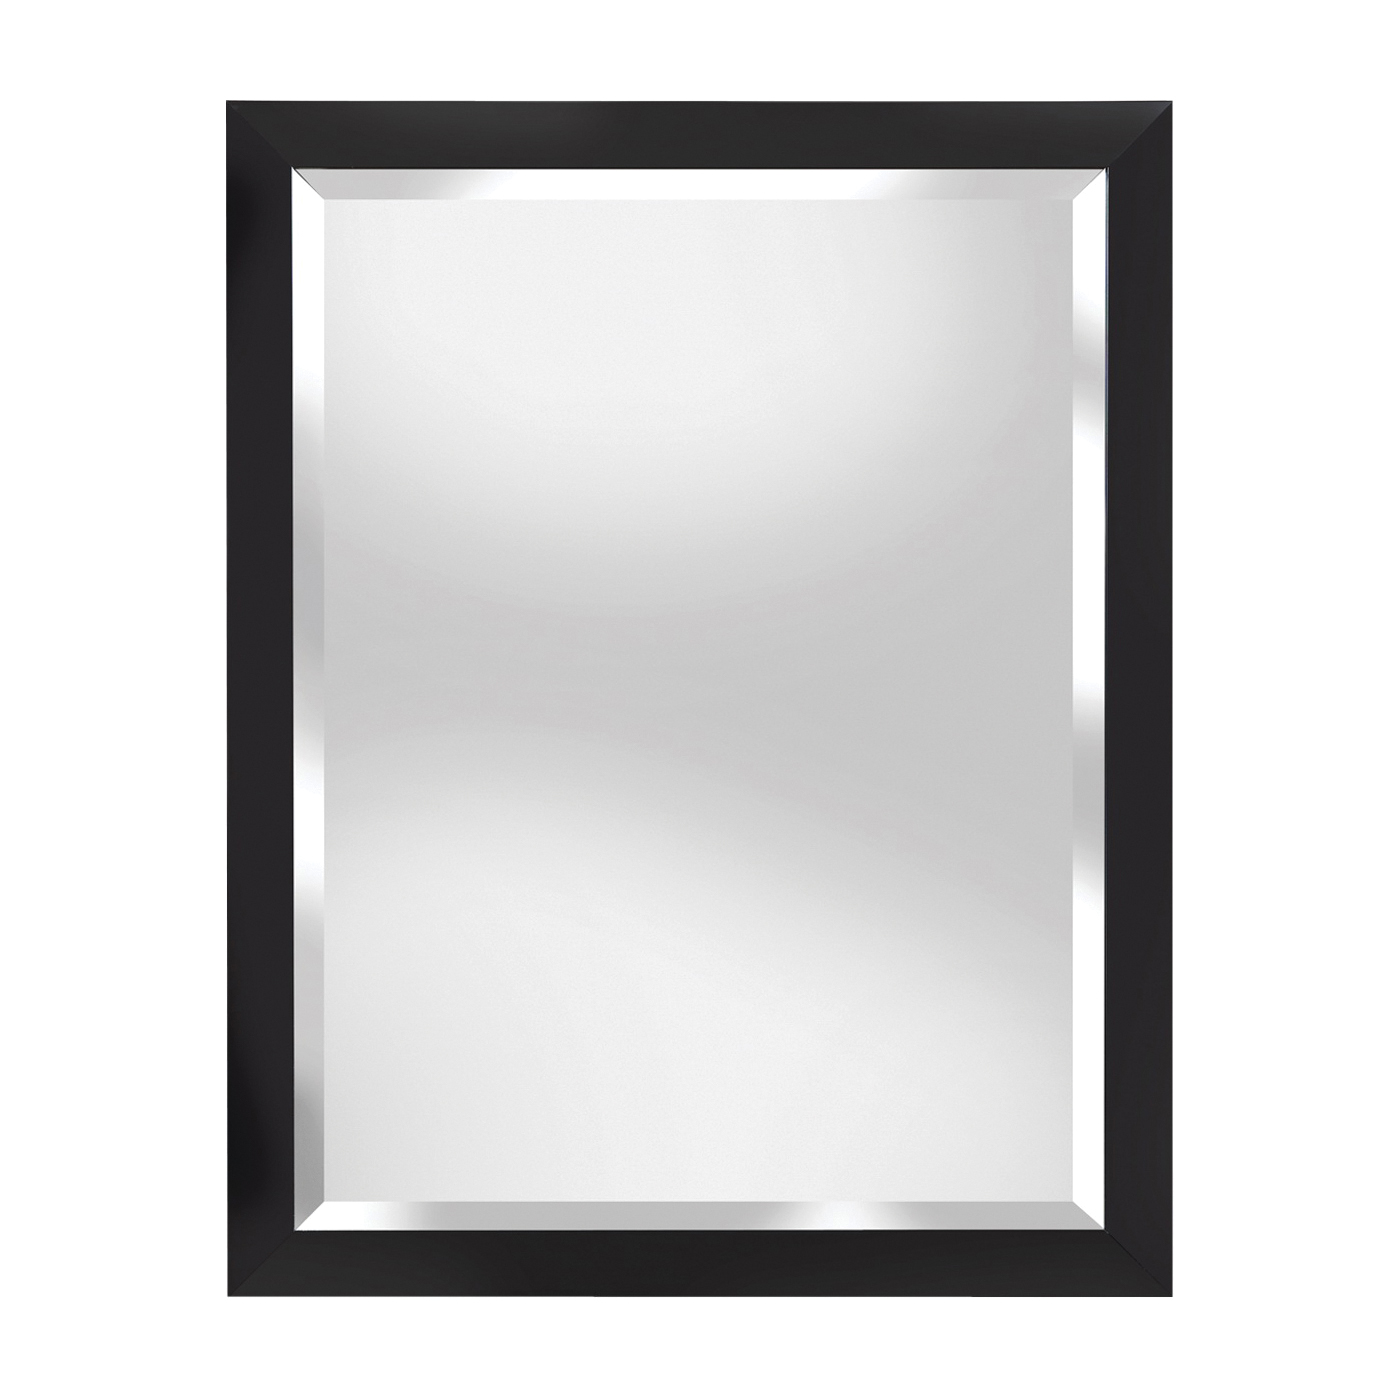 Renin 200359 Angels Pathway Framed Mirror, 28 in W, 22 in H, Rectangular, Espresso Frame - 1